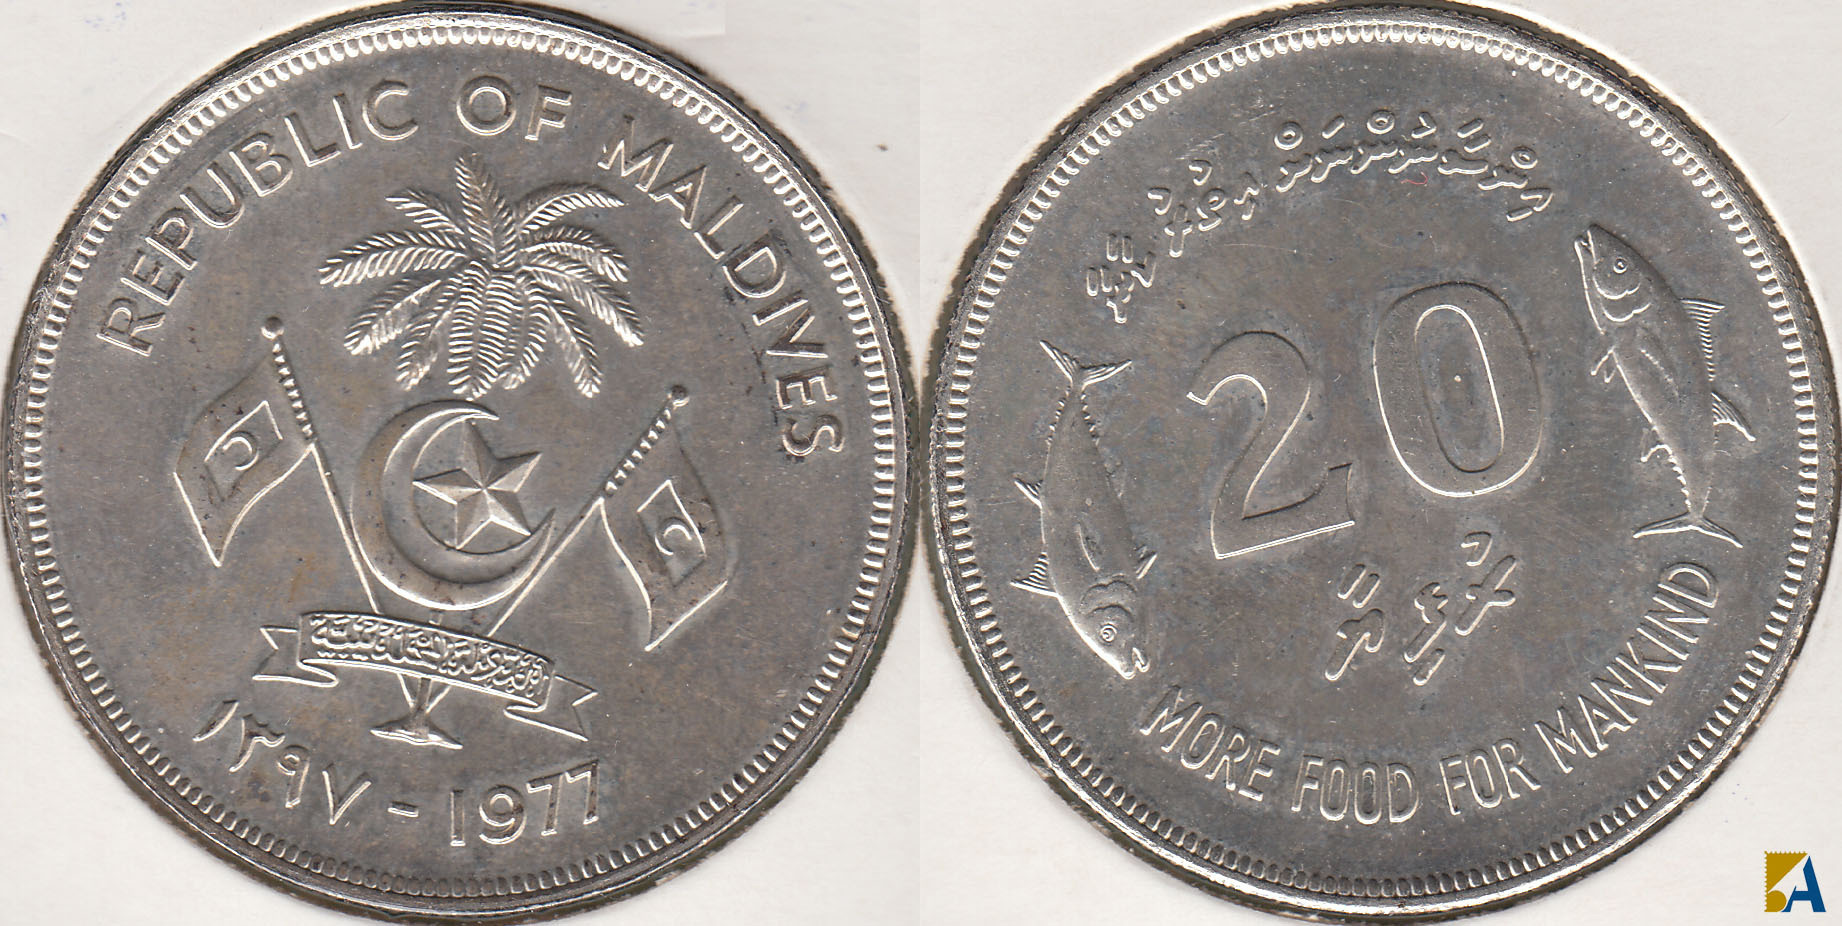 ISLAS MALDIVAS - REPUBLIC OF MALDIVES. 20 RUFIYAA DE 1977. PLATA 0.500.